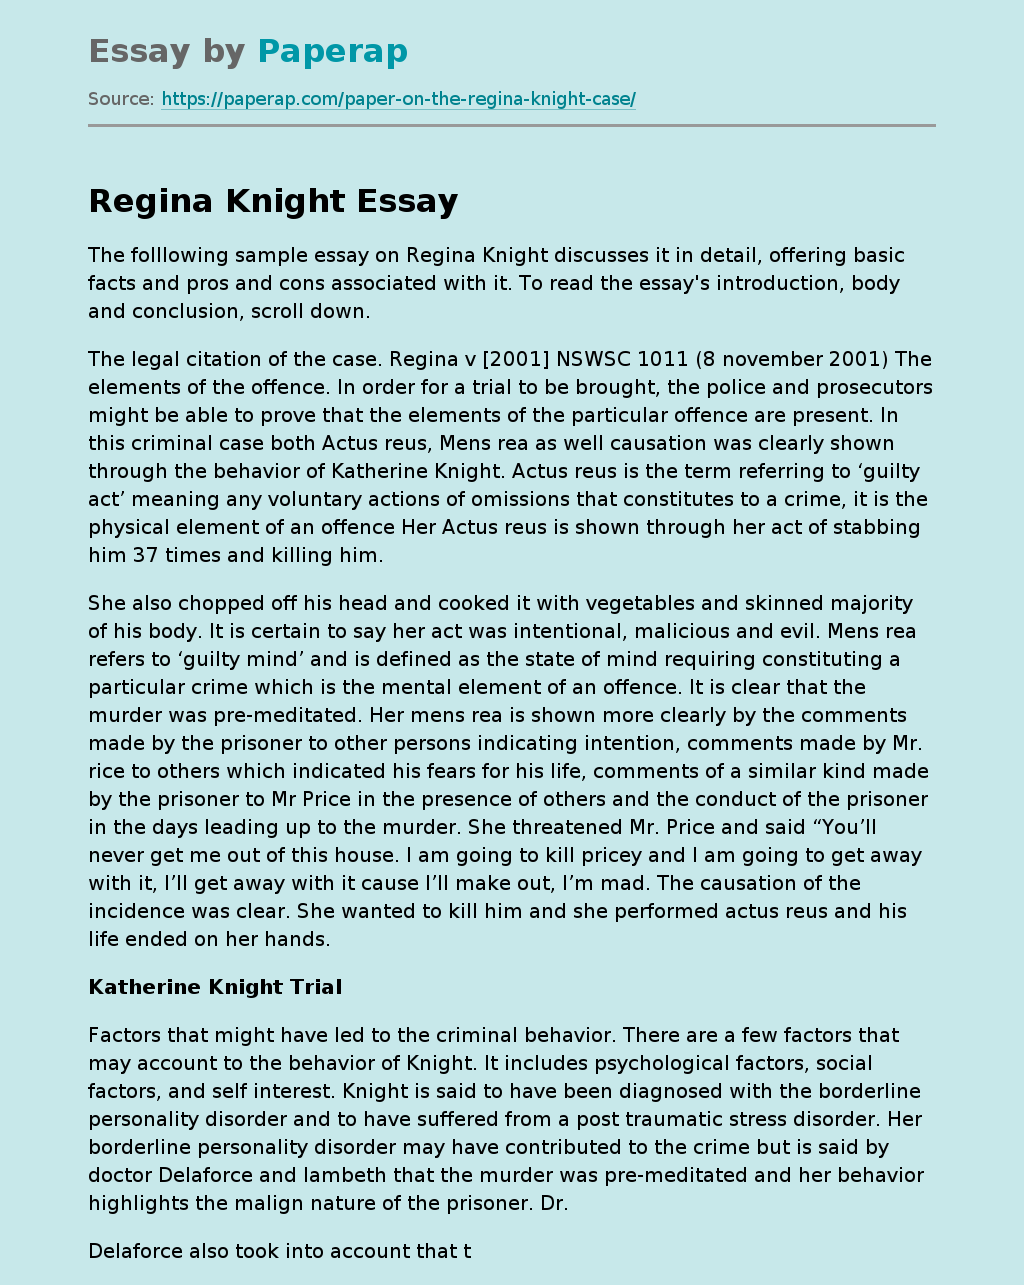 Folllowing Sample Essay on Regina Knight